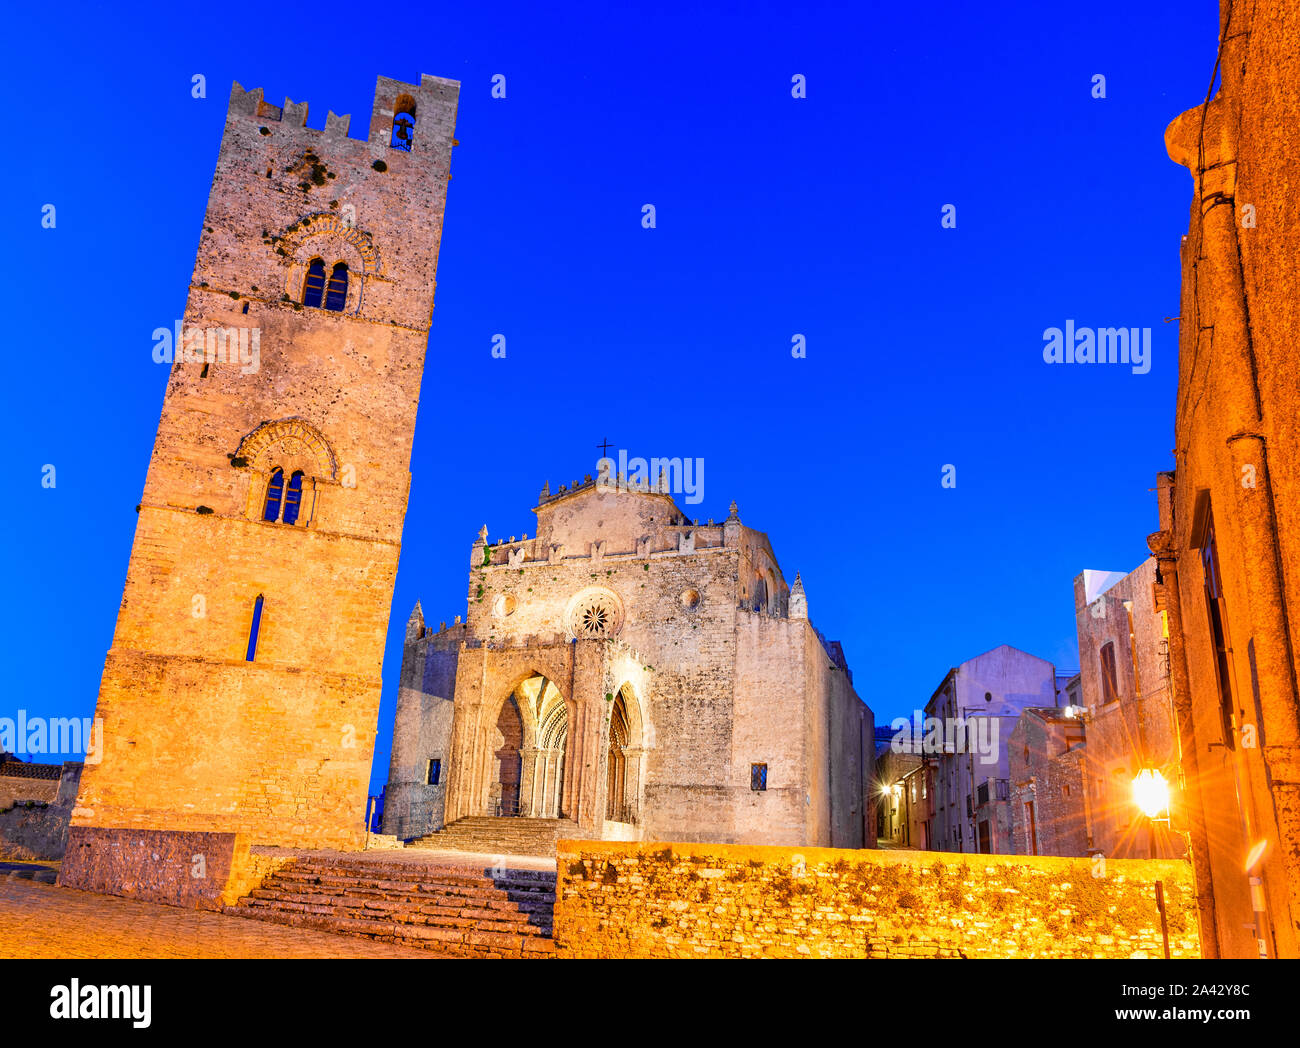 Erice, in Sicilia, Italia: Duomo dell'Assunta o Chiesa Madre chiesa principale della città medievale di Erice, Europa Foto Stock